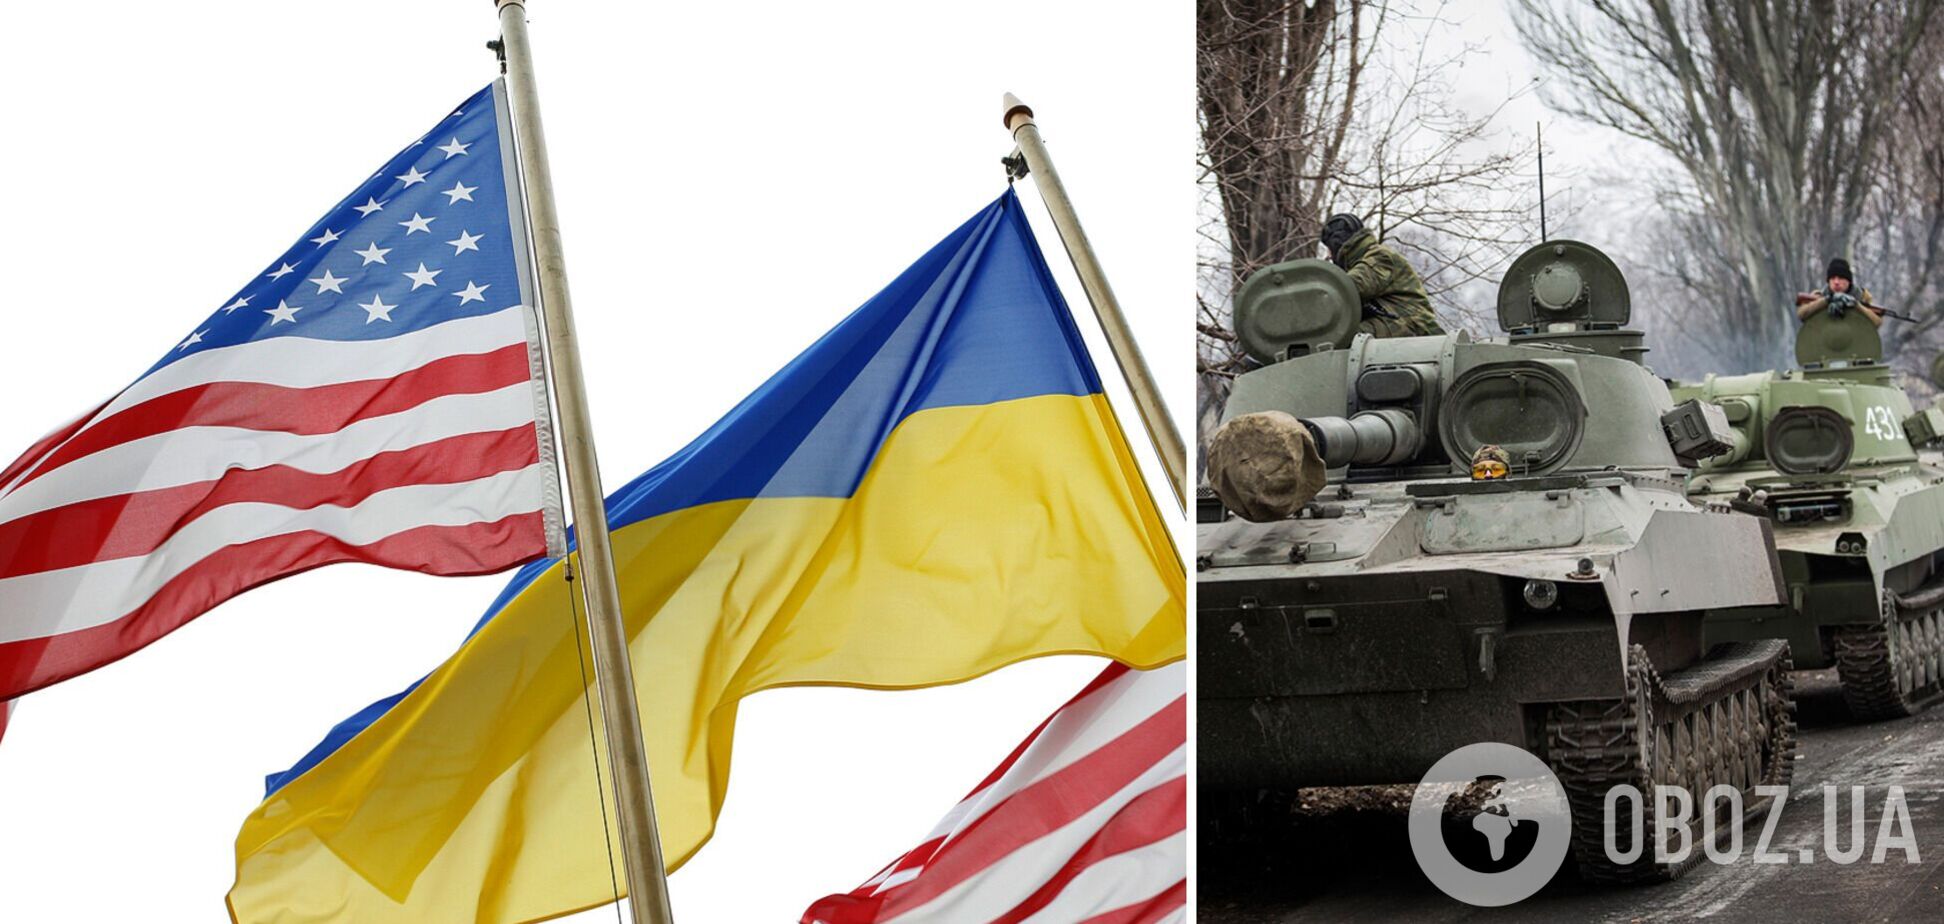 Американцев призвали воздержаться от поездок в Украину: в посольстве США указали причину